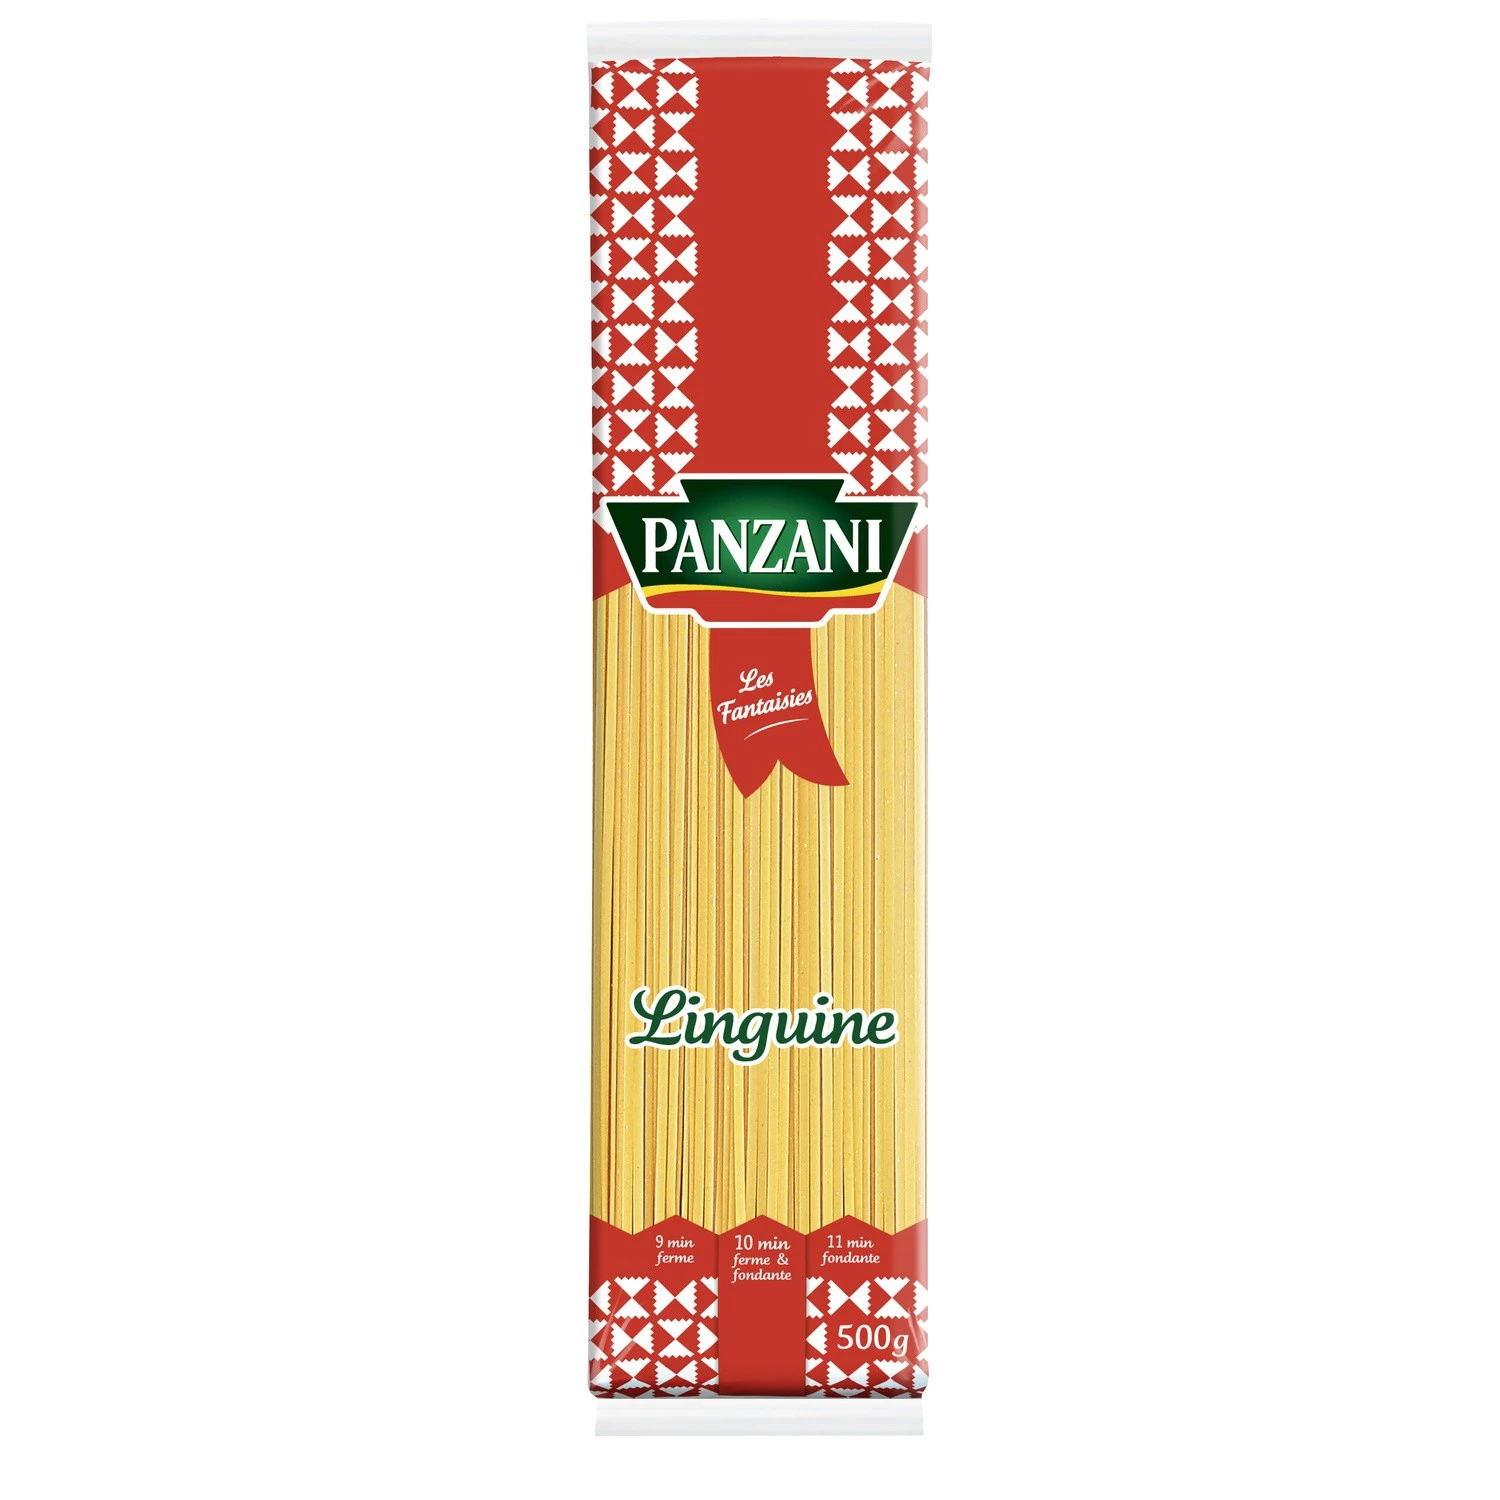 スパゲッティ リングイネ パスタ、500g - PANZANI